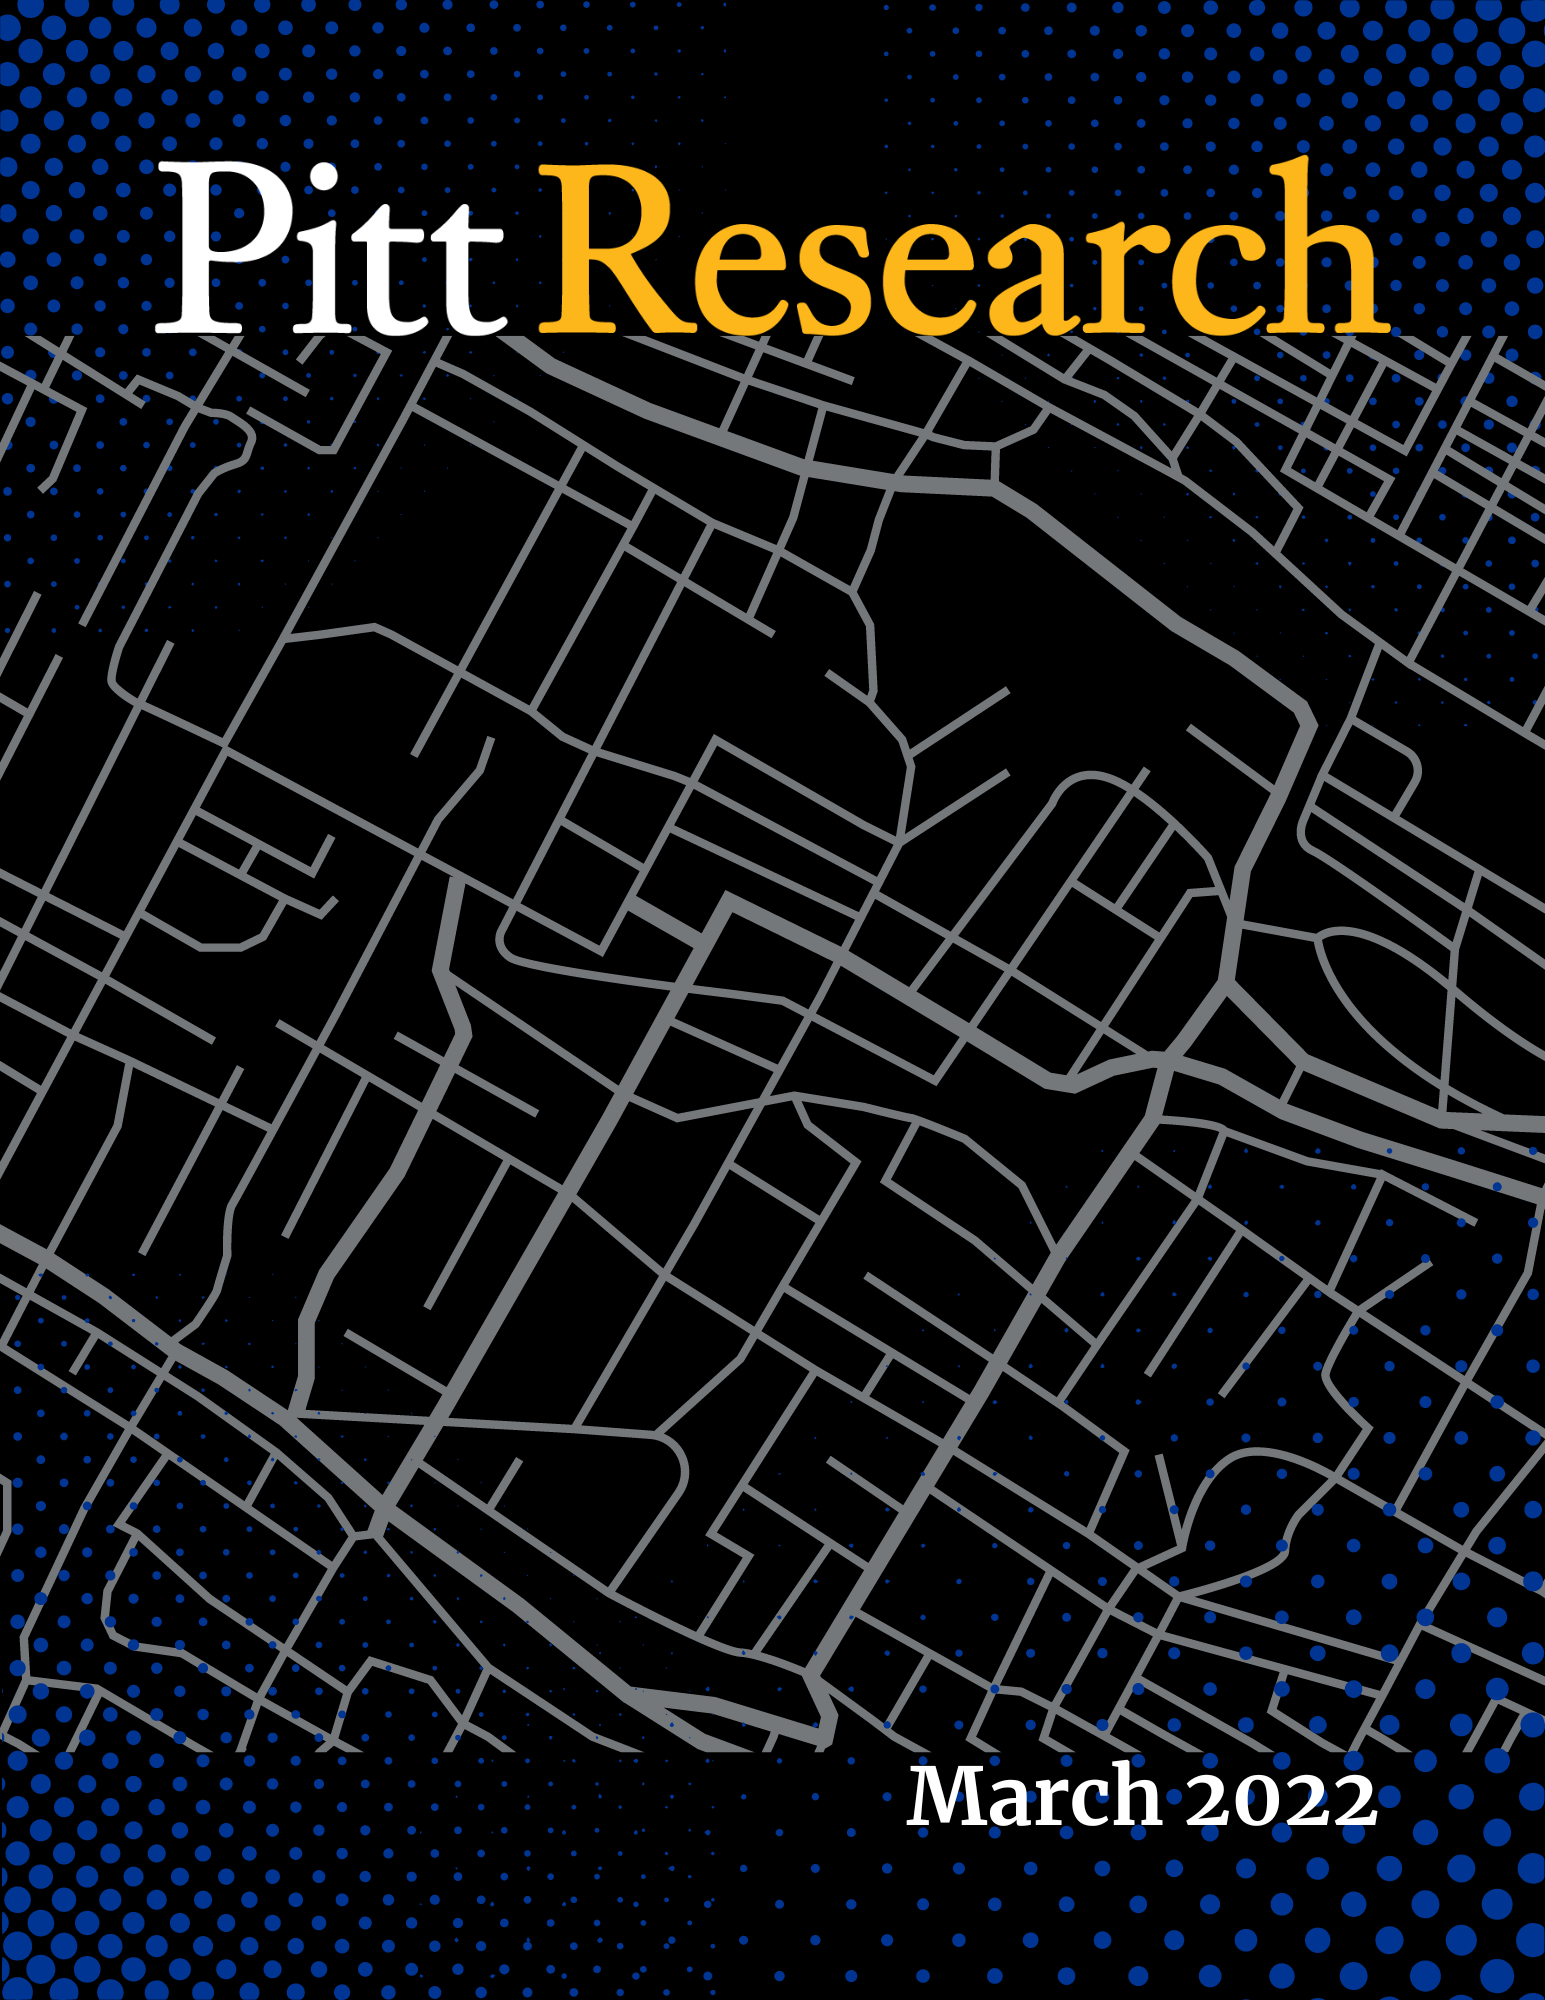 March 2022 Pitt Research Newsletter